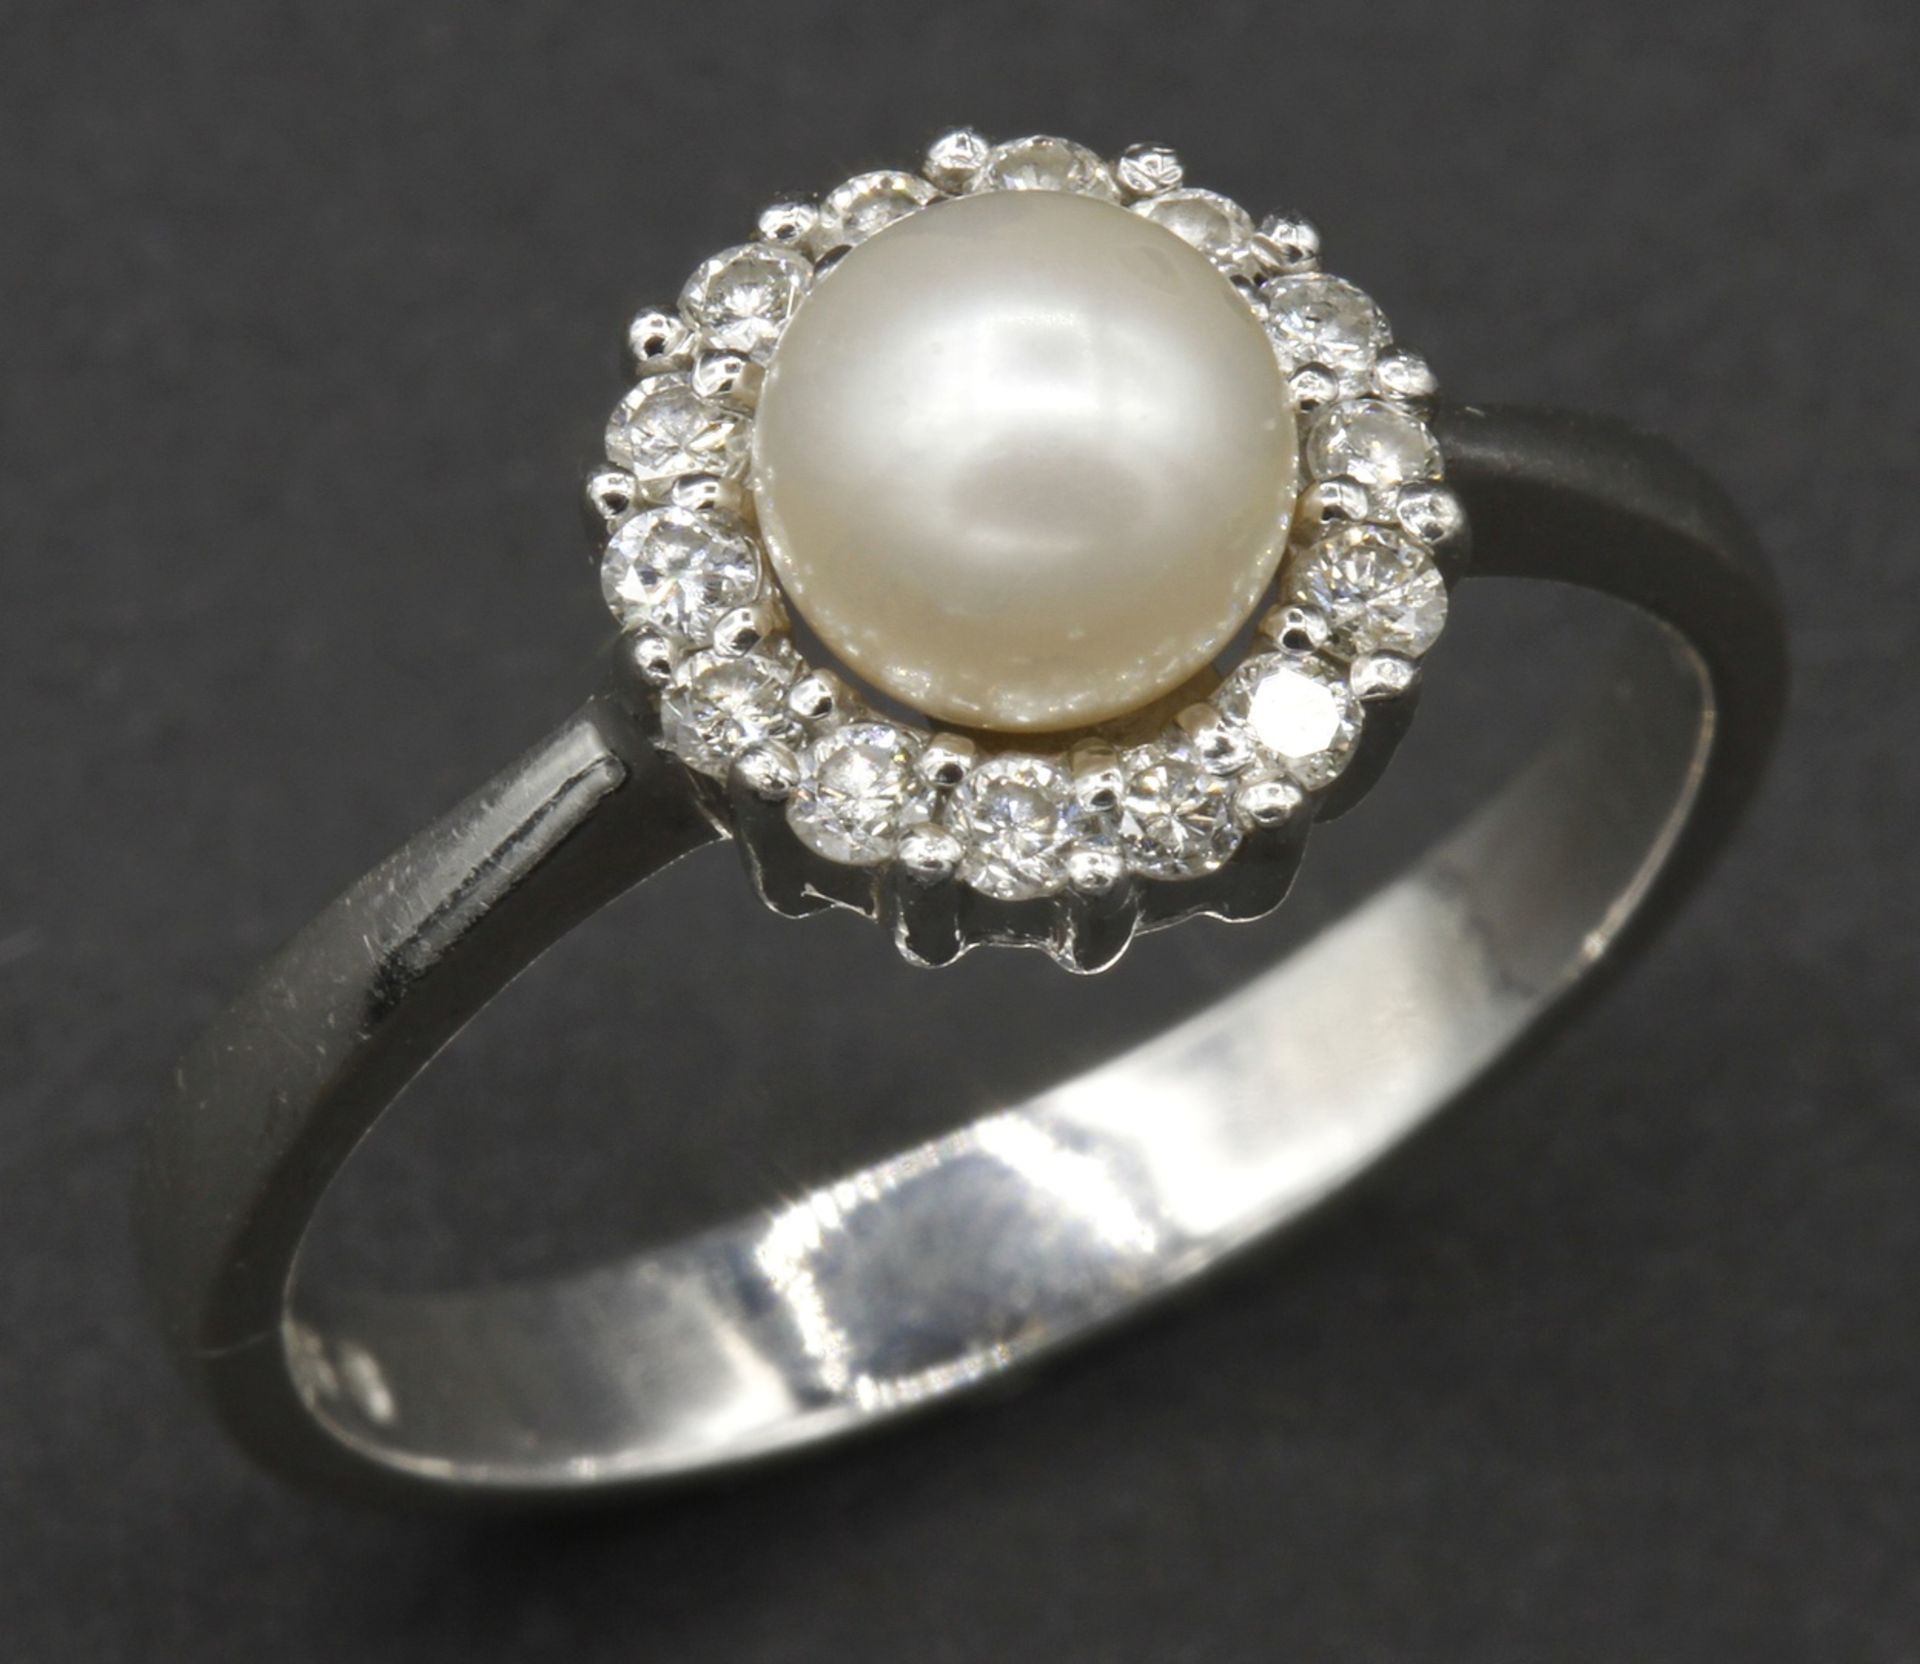 Entourage-Ring mit Perle und Brillanten585/- Weißgold, rosé-weiße Perle, 14 je 0,019 ct